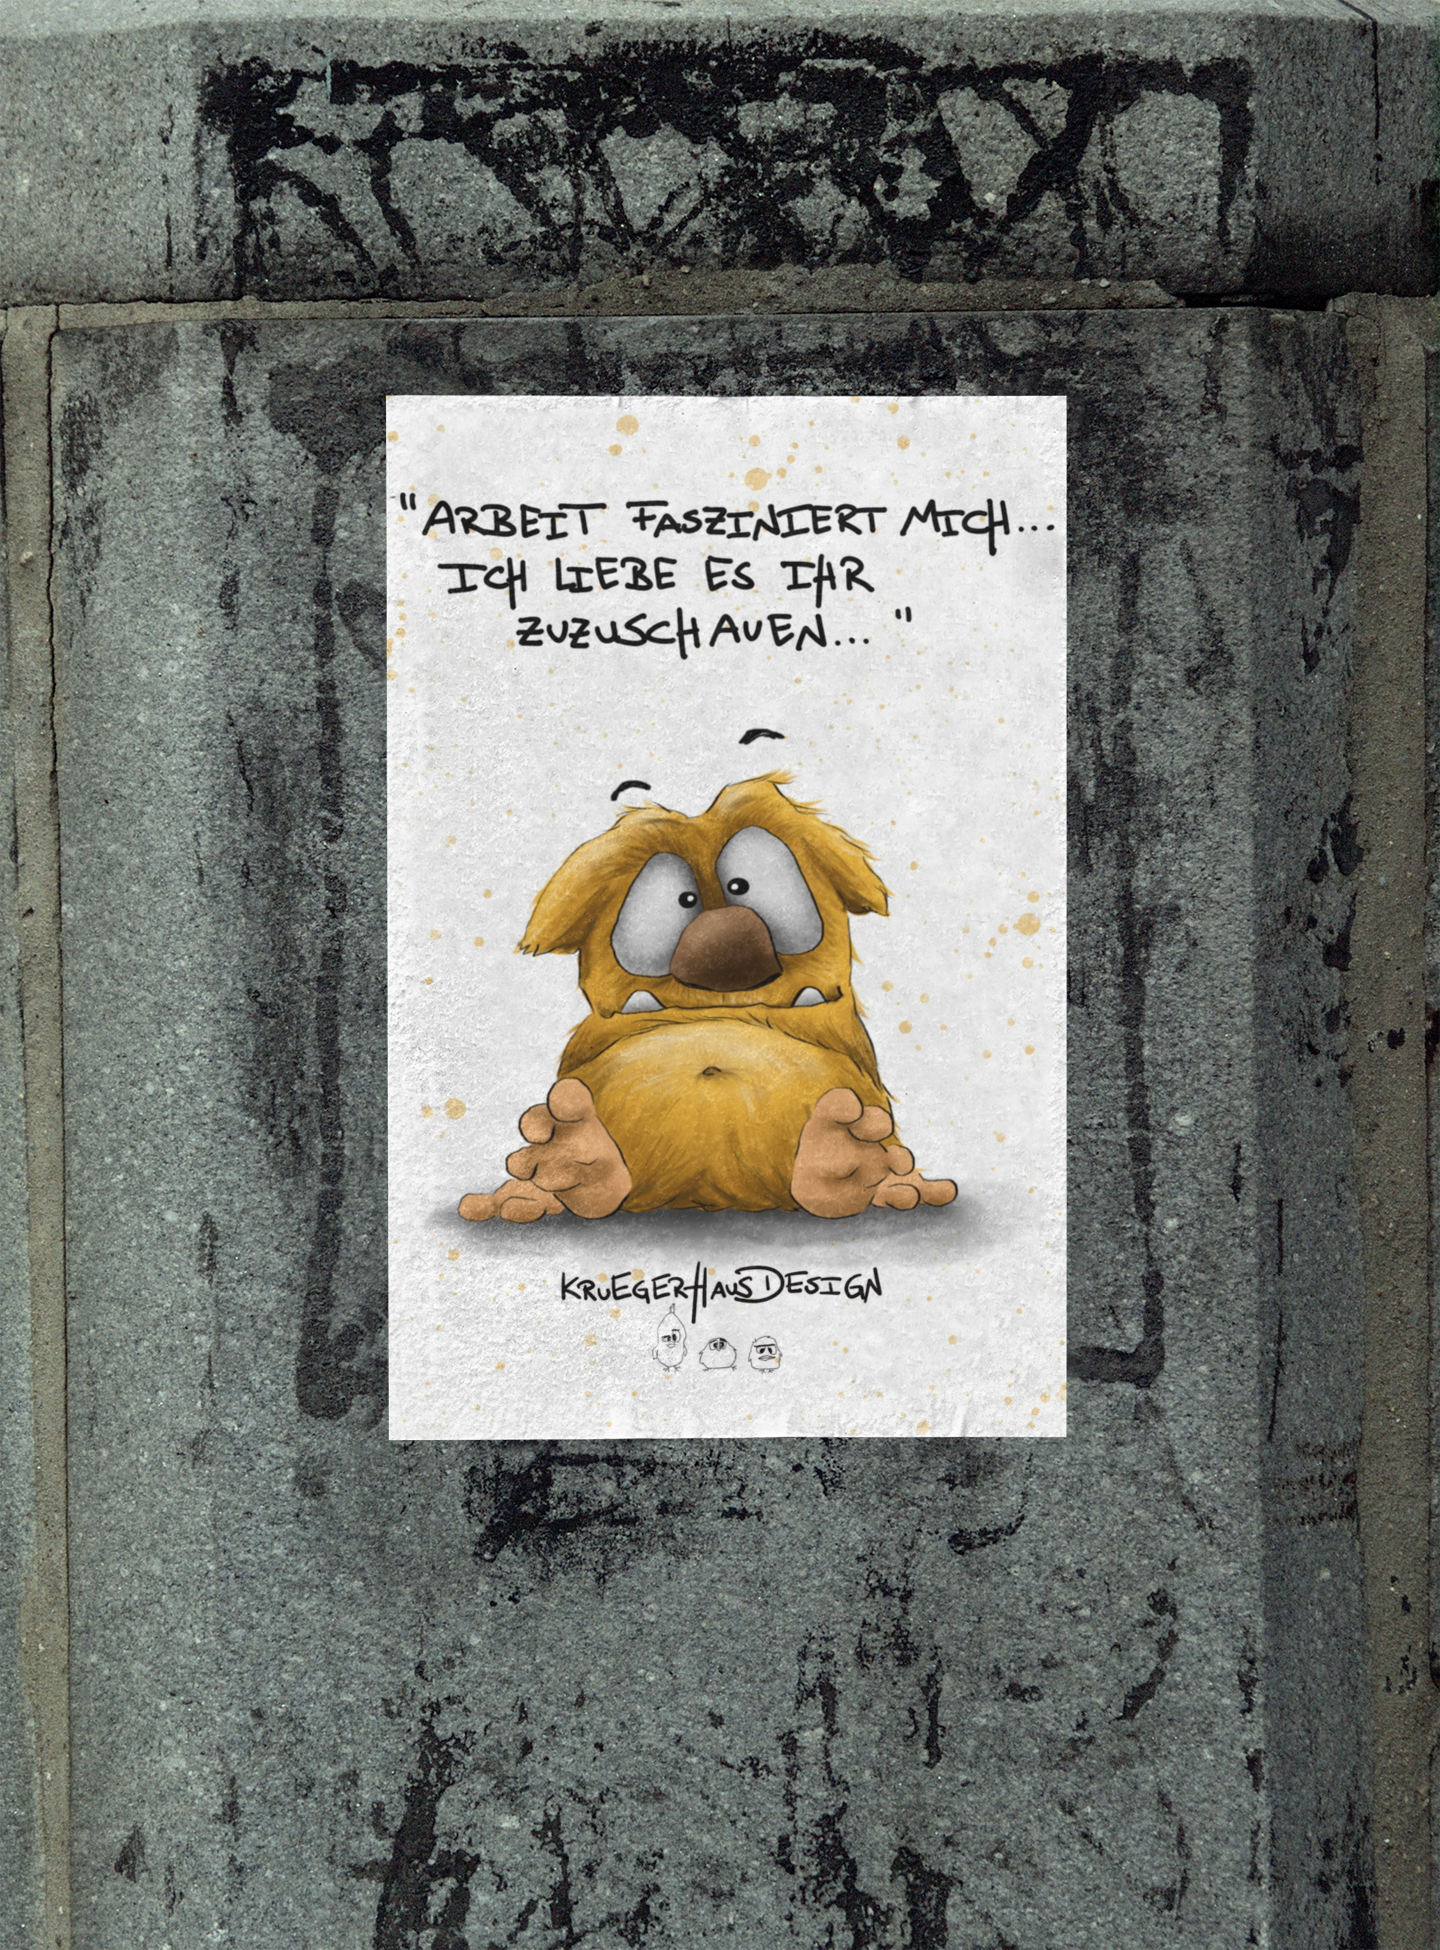 Poster von Kruegerhausdesign mit Monster und Spruch "Arbeit fasziniert mich..."